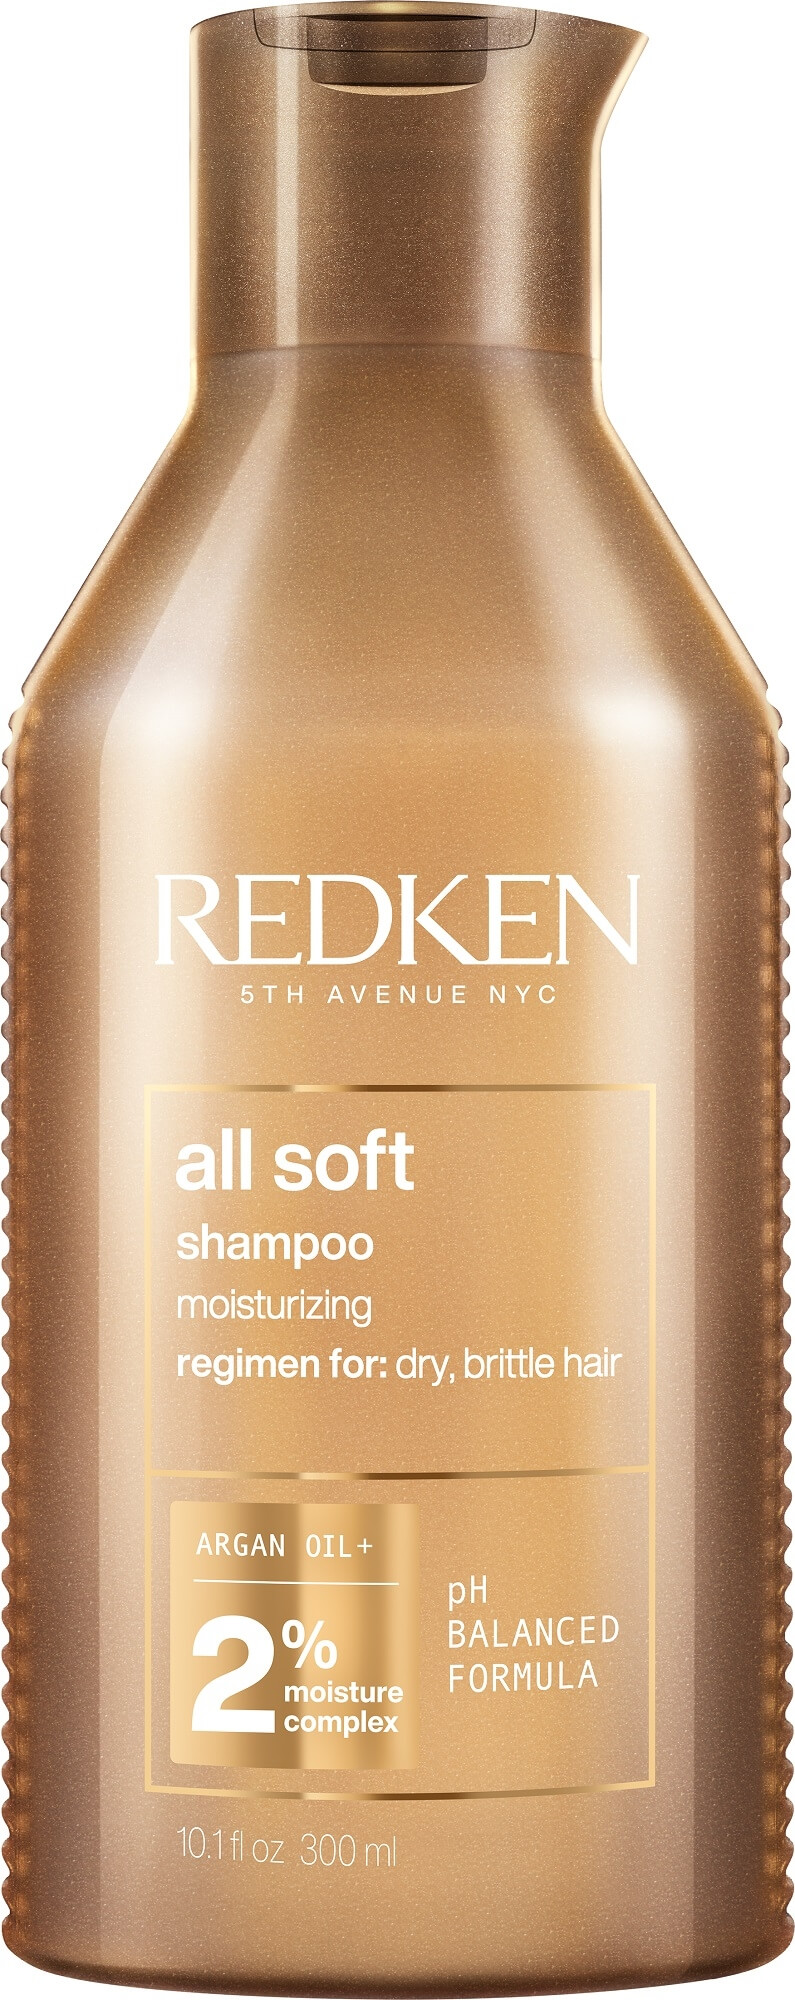 Redken Zjemňujúci šampón pre suché a krehké vlasy All Soft (Shampoo) 300 ml - nové balení + 2 mesiace na vrátenie tovaru